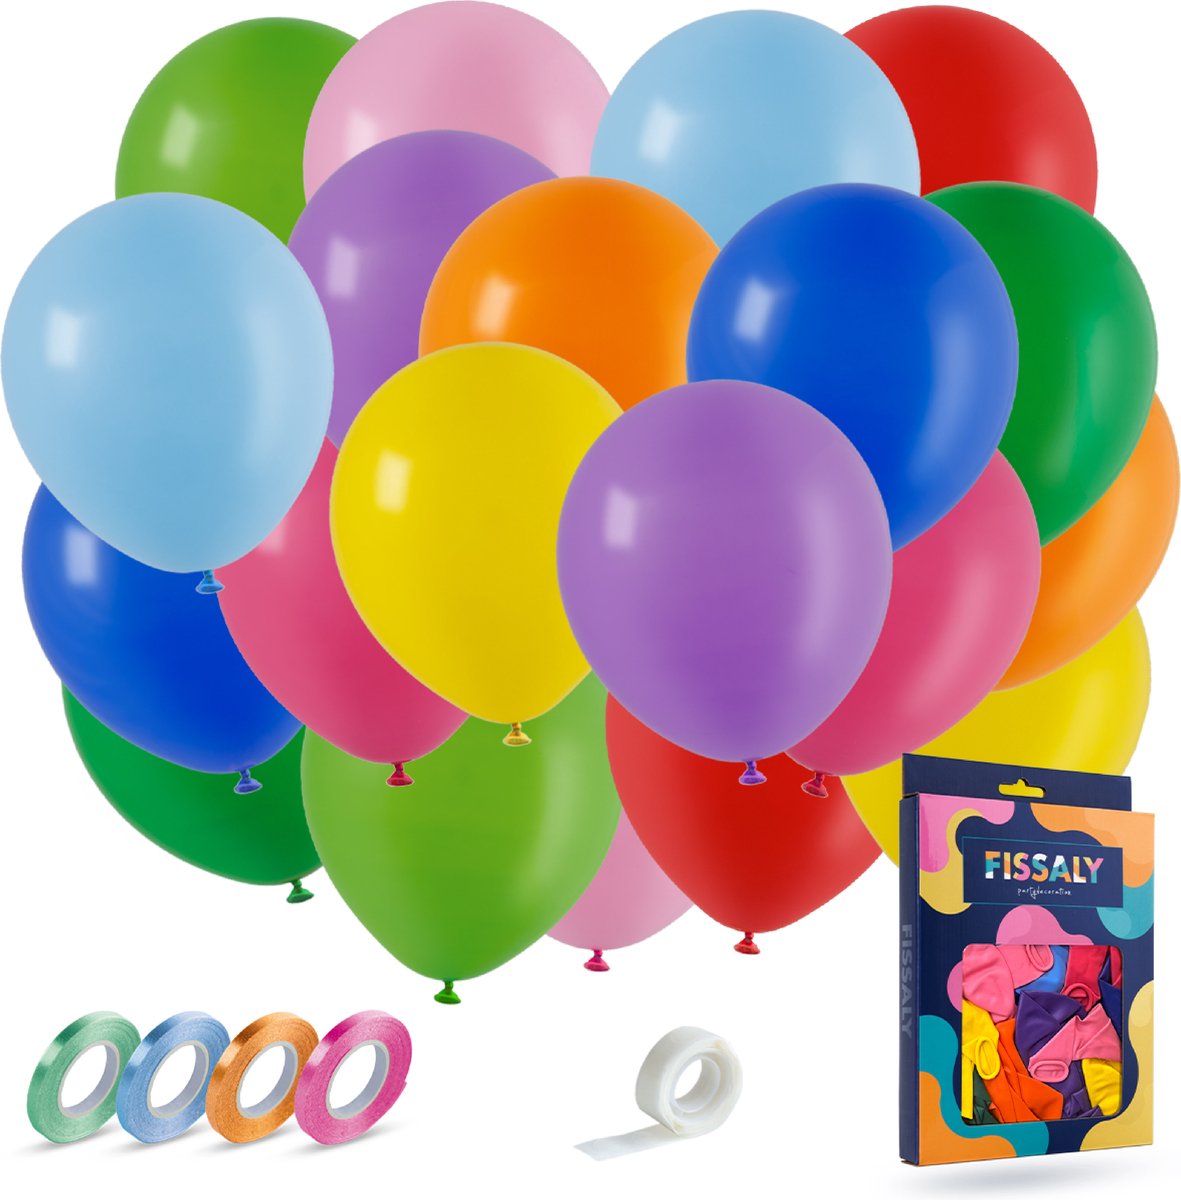 Fissaly 40 Stuks Gekleurde Latex Helium Ballonnen met Accessoires – Wit, Geel, Oranje, Rood, Roze, Paars, Blauw & Groen Decoratie - Fissaly